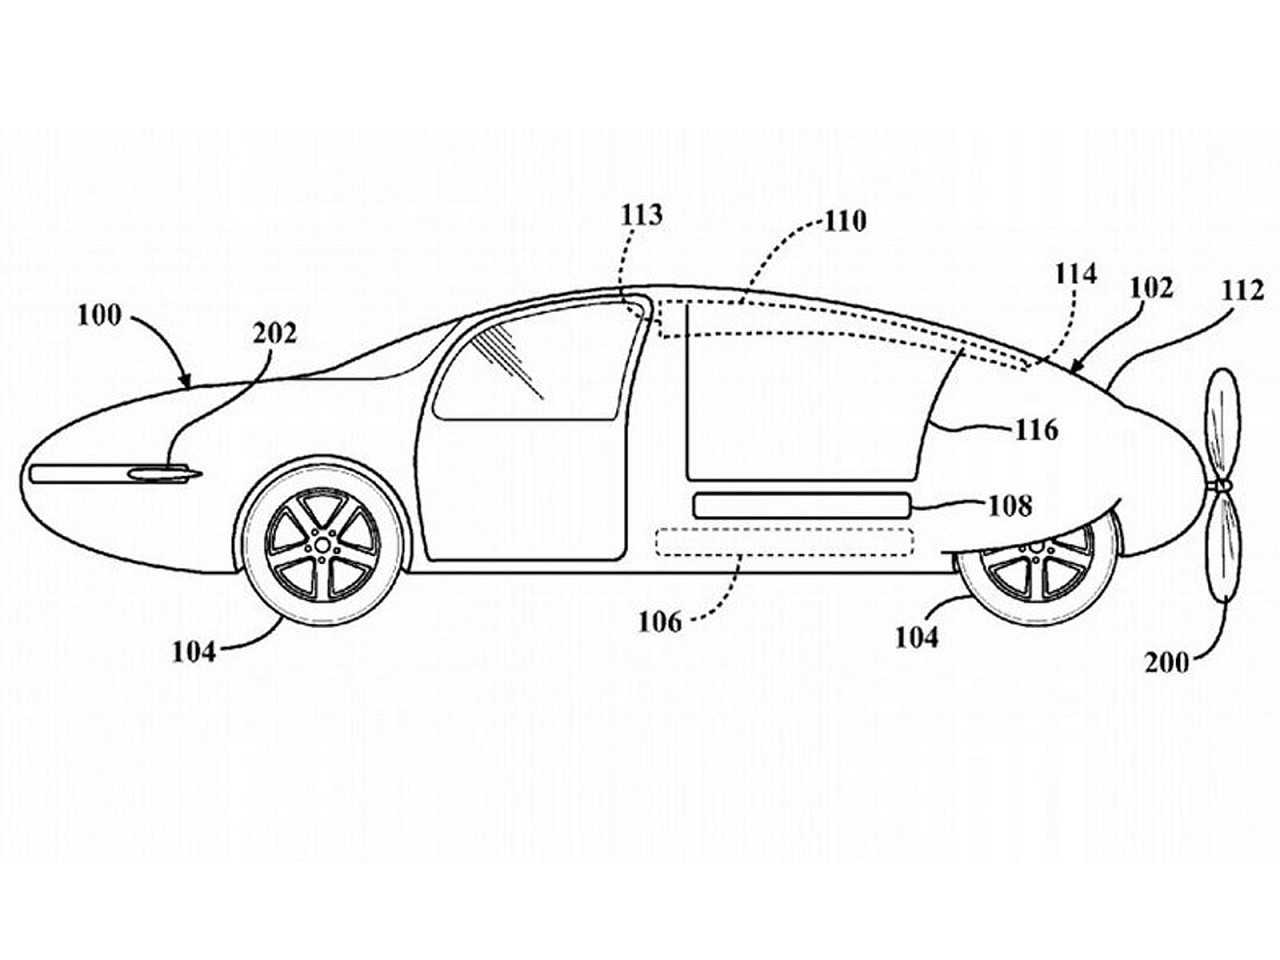 Patente da Toyota para um carro voador